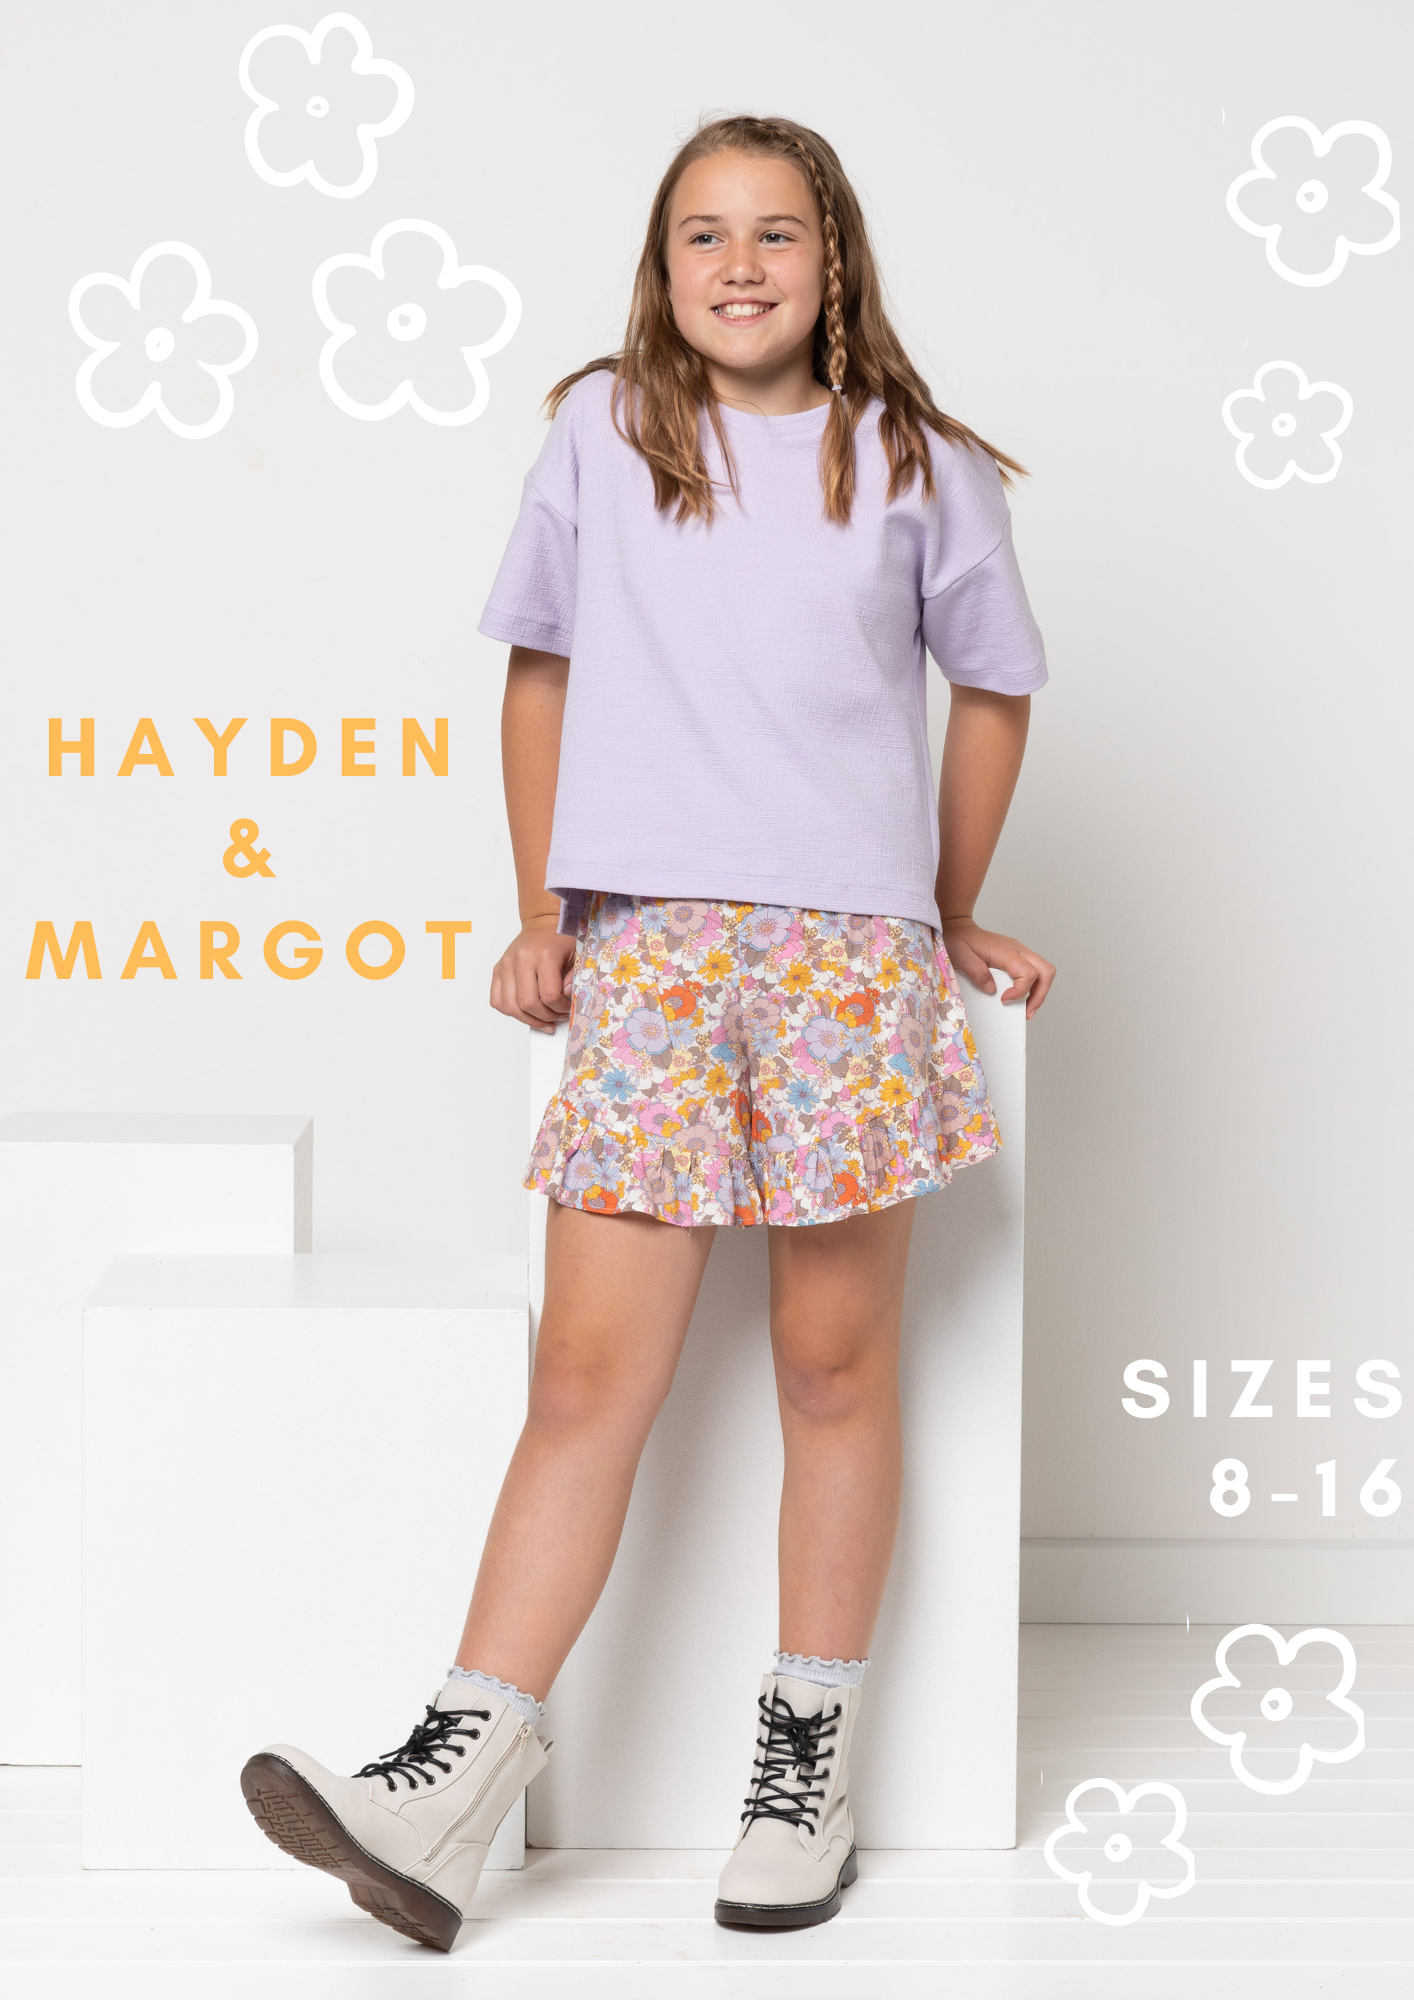 New Release | Margot Teens Skort + Hayden Teens Tee